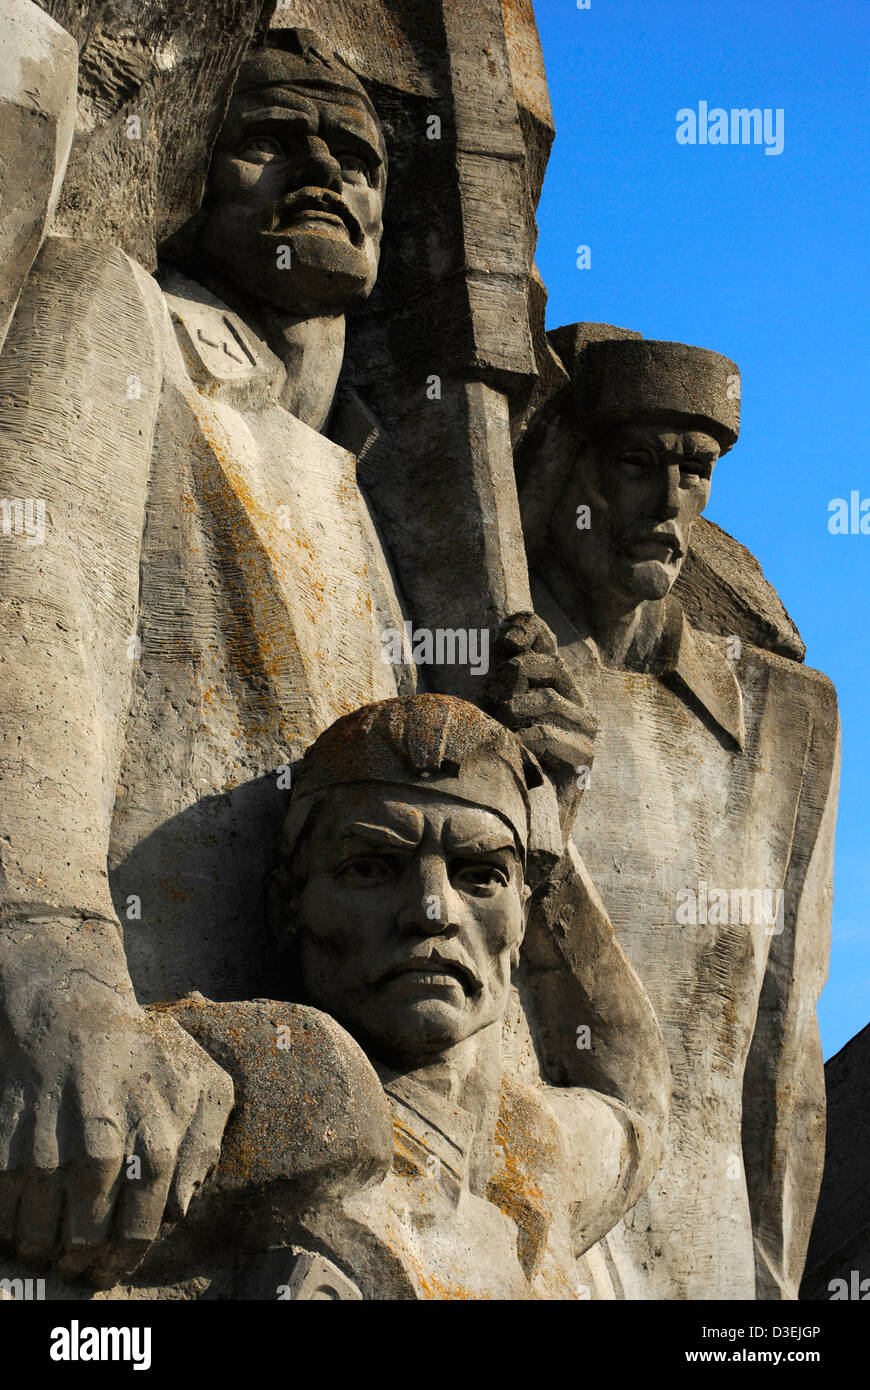 L'Ucraina. La Crimea. Memoriale per la difesa della cava Adzhimushkay, 1982, contro l'occupazione nazista nel 1942. Dettaglio. Foto Stock